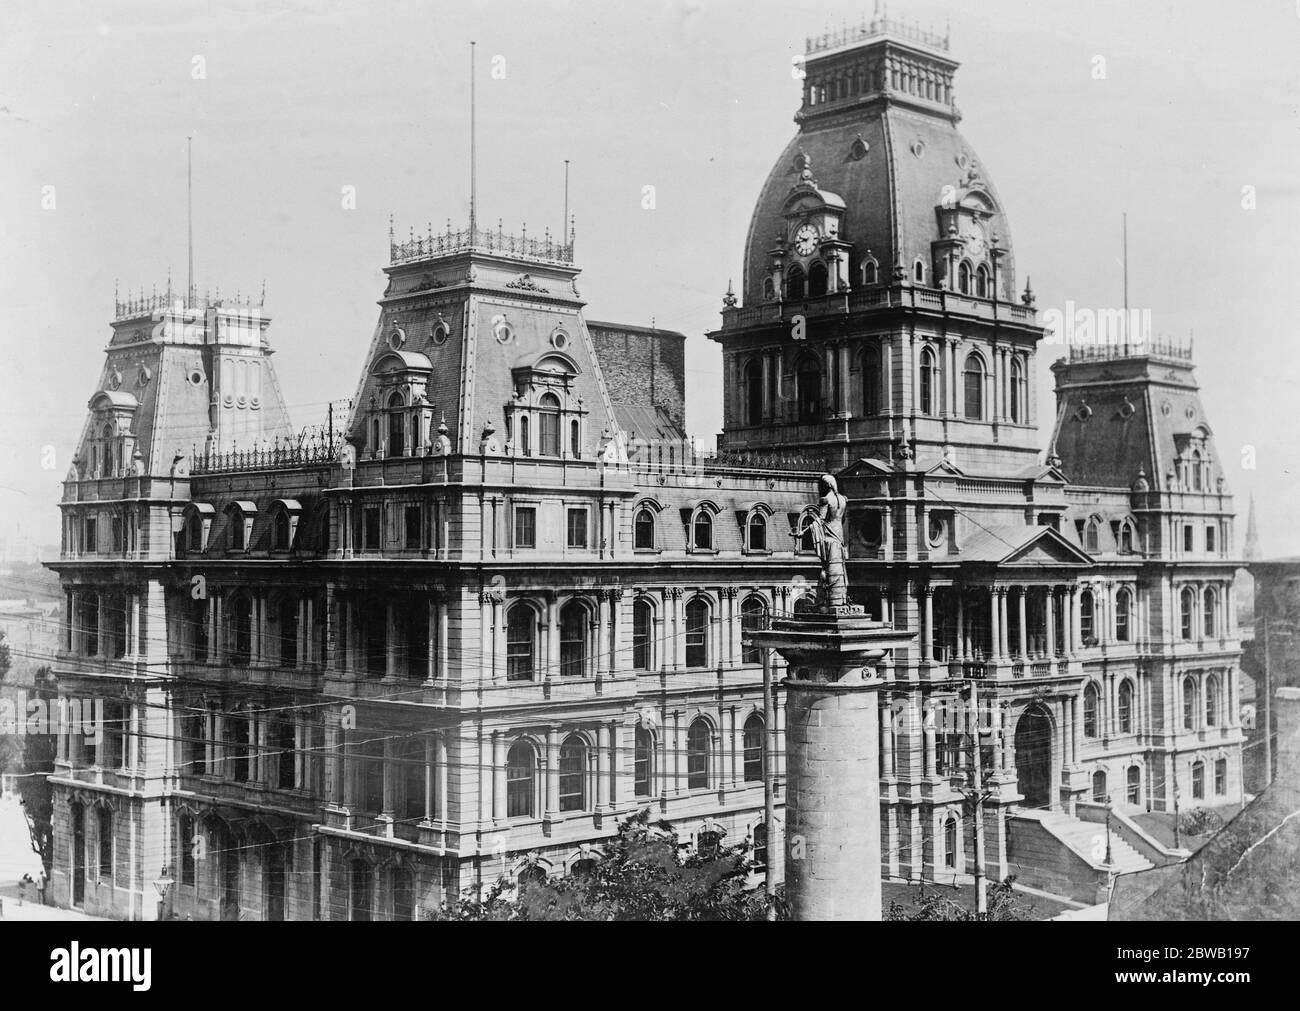 Das Rathaus, Montreal, die durch Feuer zerstört wurde. Der Fall des großen Turms brachte das Dach herunter. Das Foto zeigt deutlich das Mansard Dach, das ein Merkmal des Gebäudes war. März 1922 Stockfoto